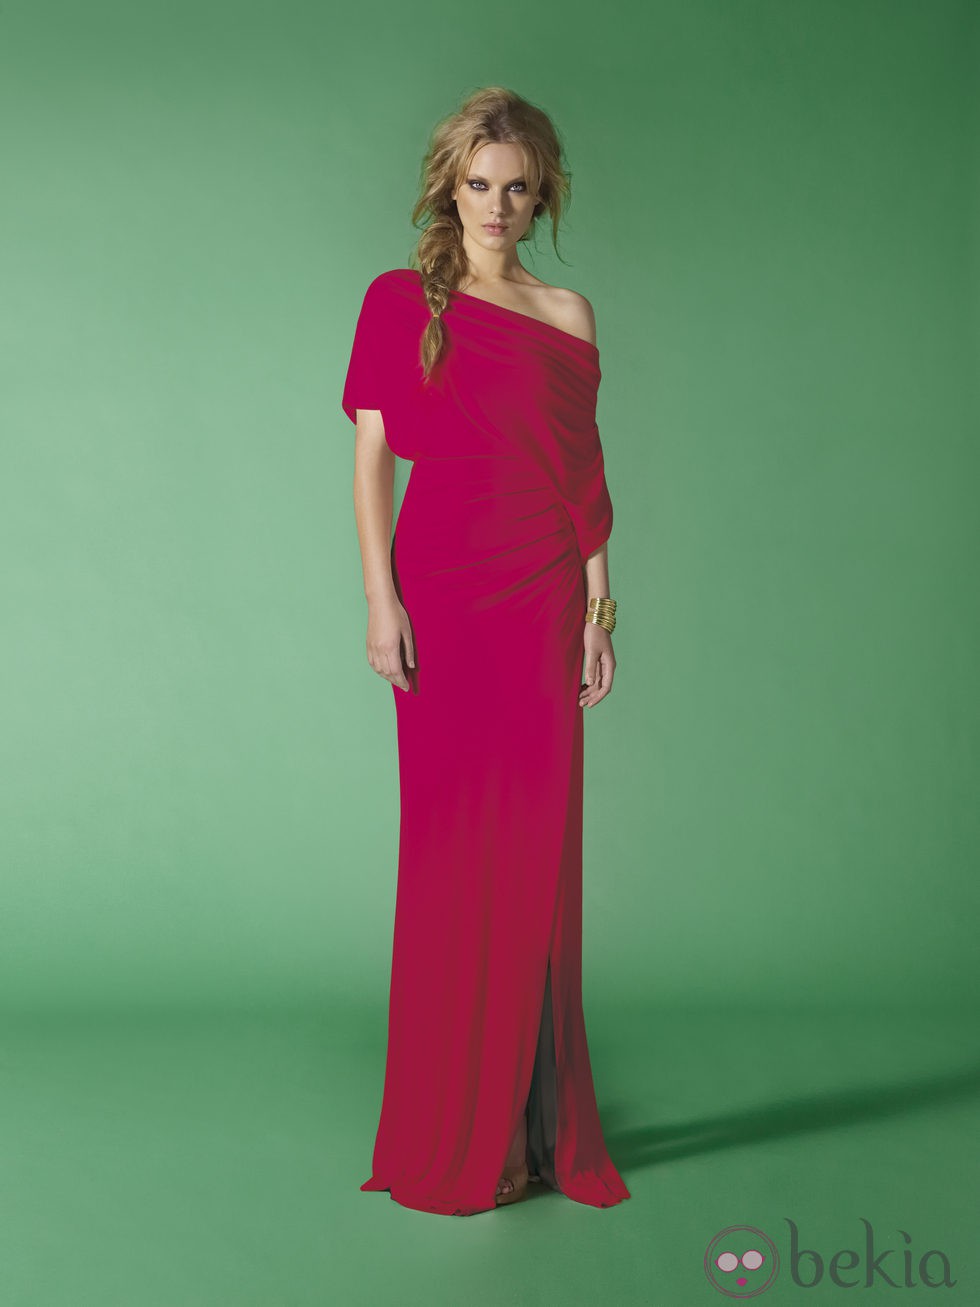 Vestido largo rojo de la nueva colección de Etxar&Panno primavera/verano 2012